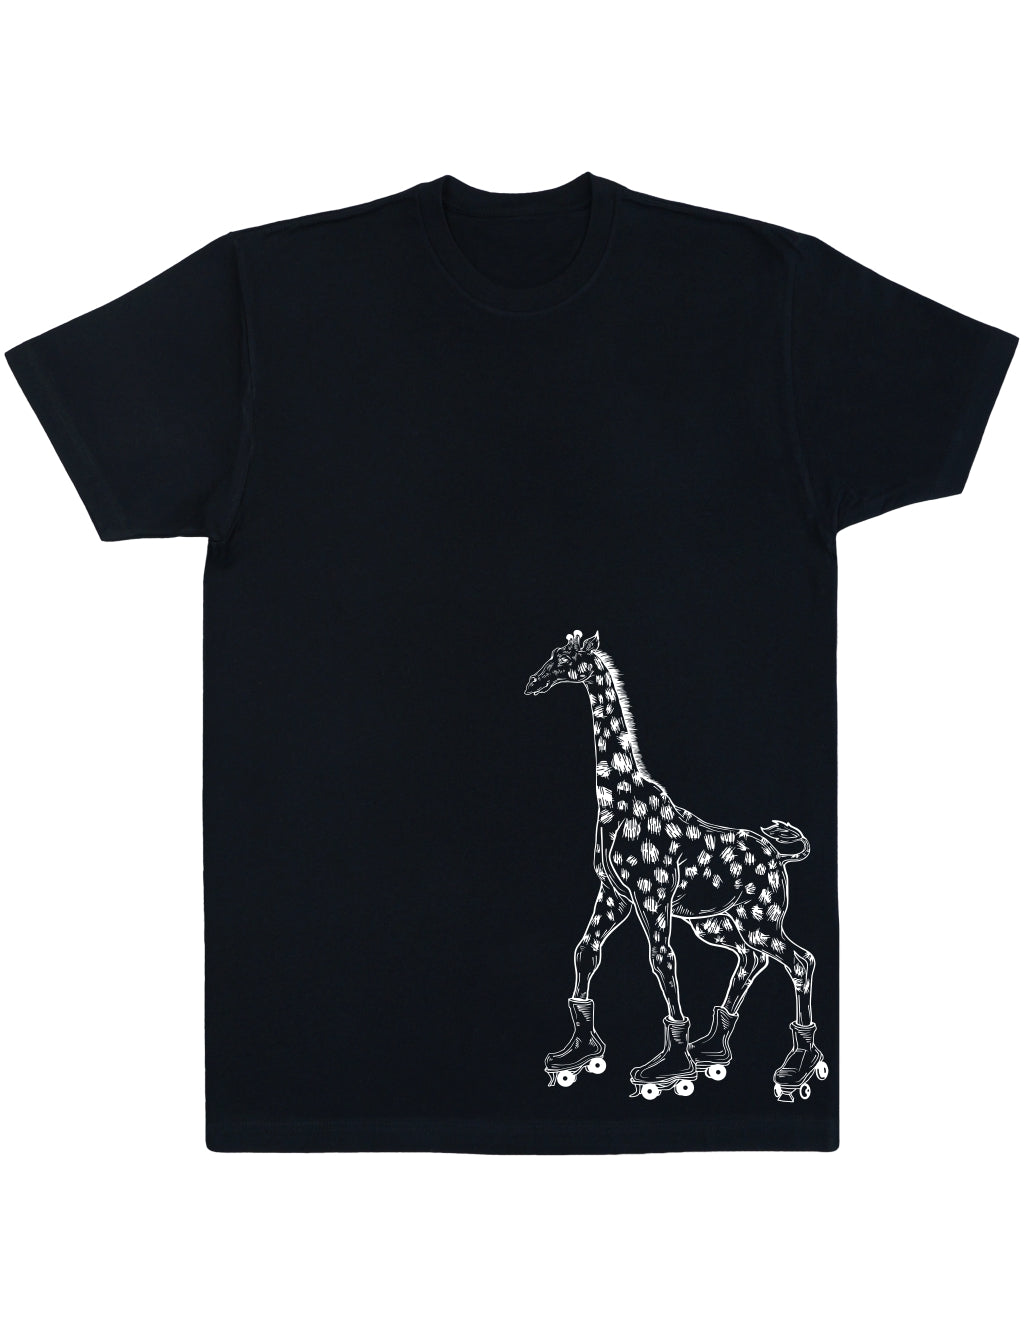 SEEMBO Giraffe Skater Funny Skating Roller Skates Men Cotton T-Shirt Side Print